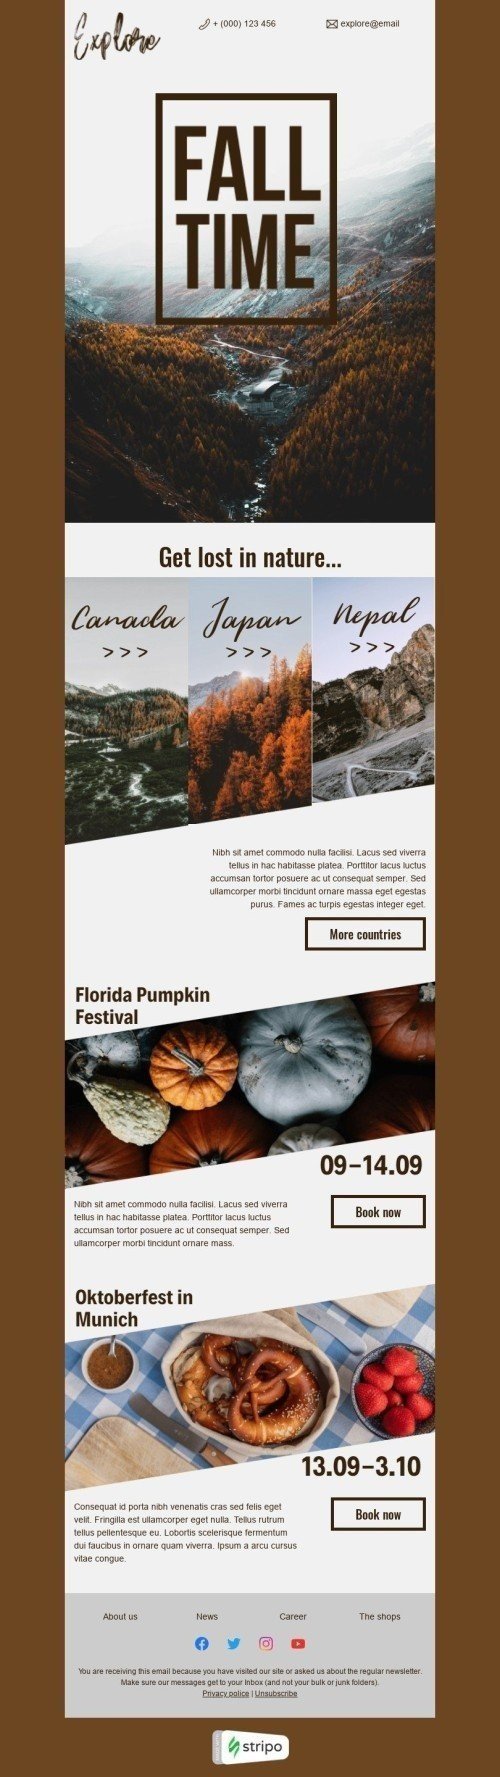 Plantilla de correo electrónico «Explora el otoño» de Primer dia de otoño para la industria de Turismo Vista de móvil